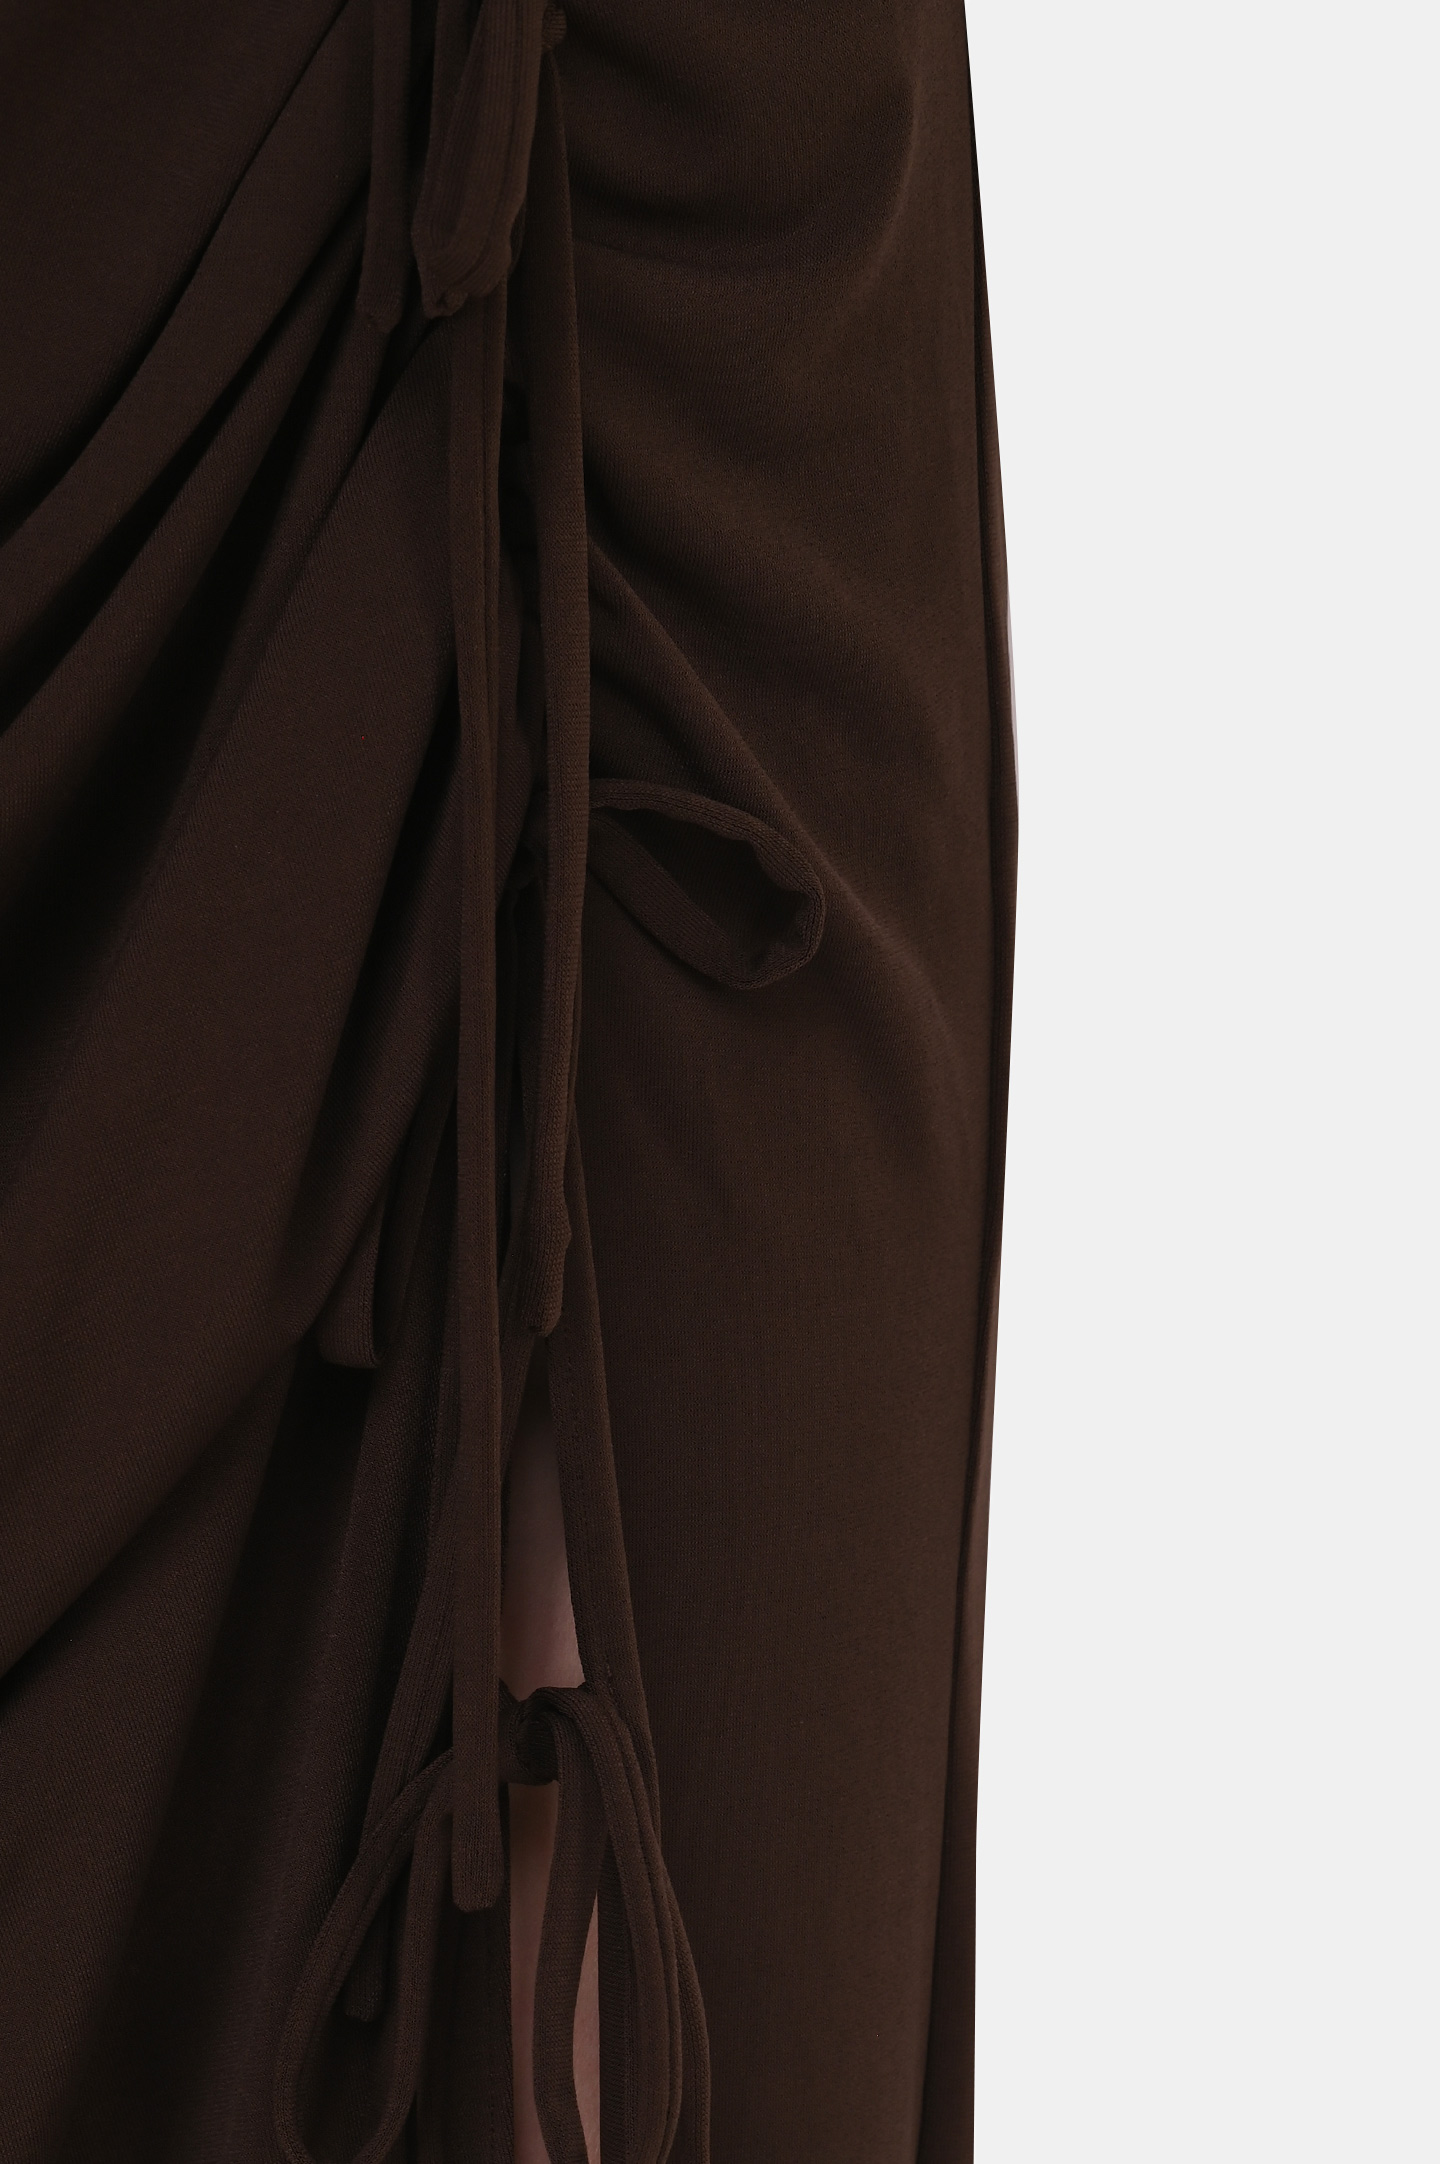 Платье SELF PORTRAIT RS22-114M, цвет: Коричневый, Женский